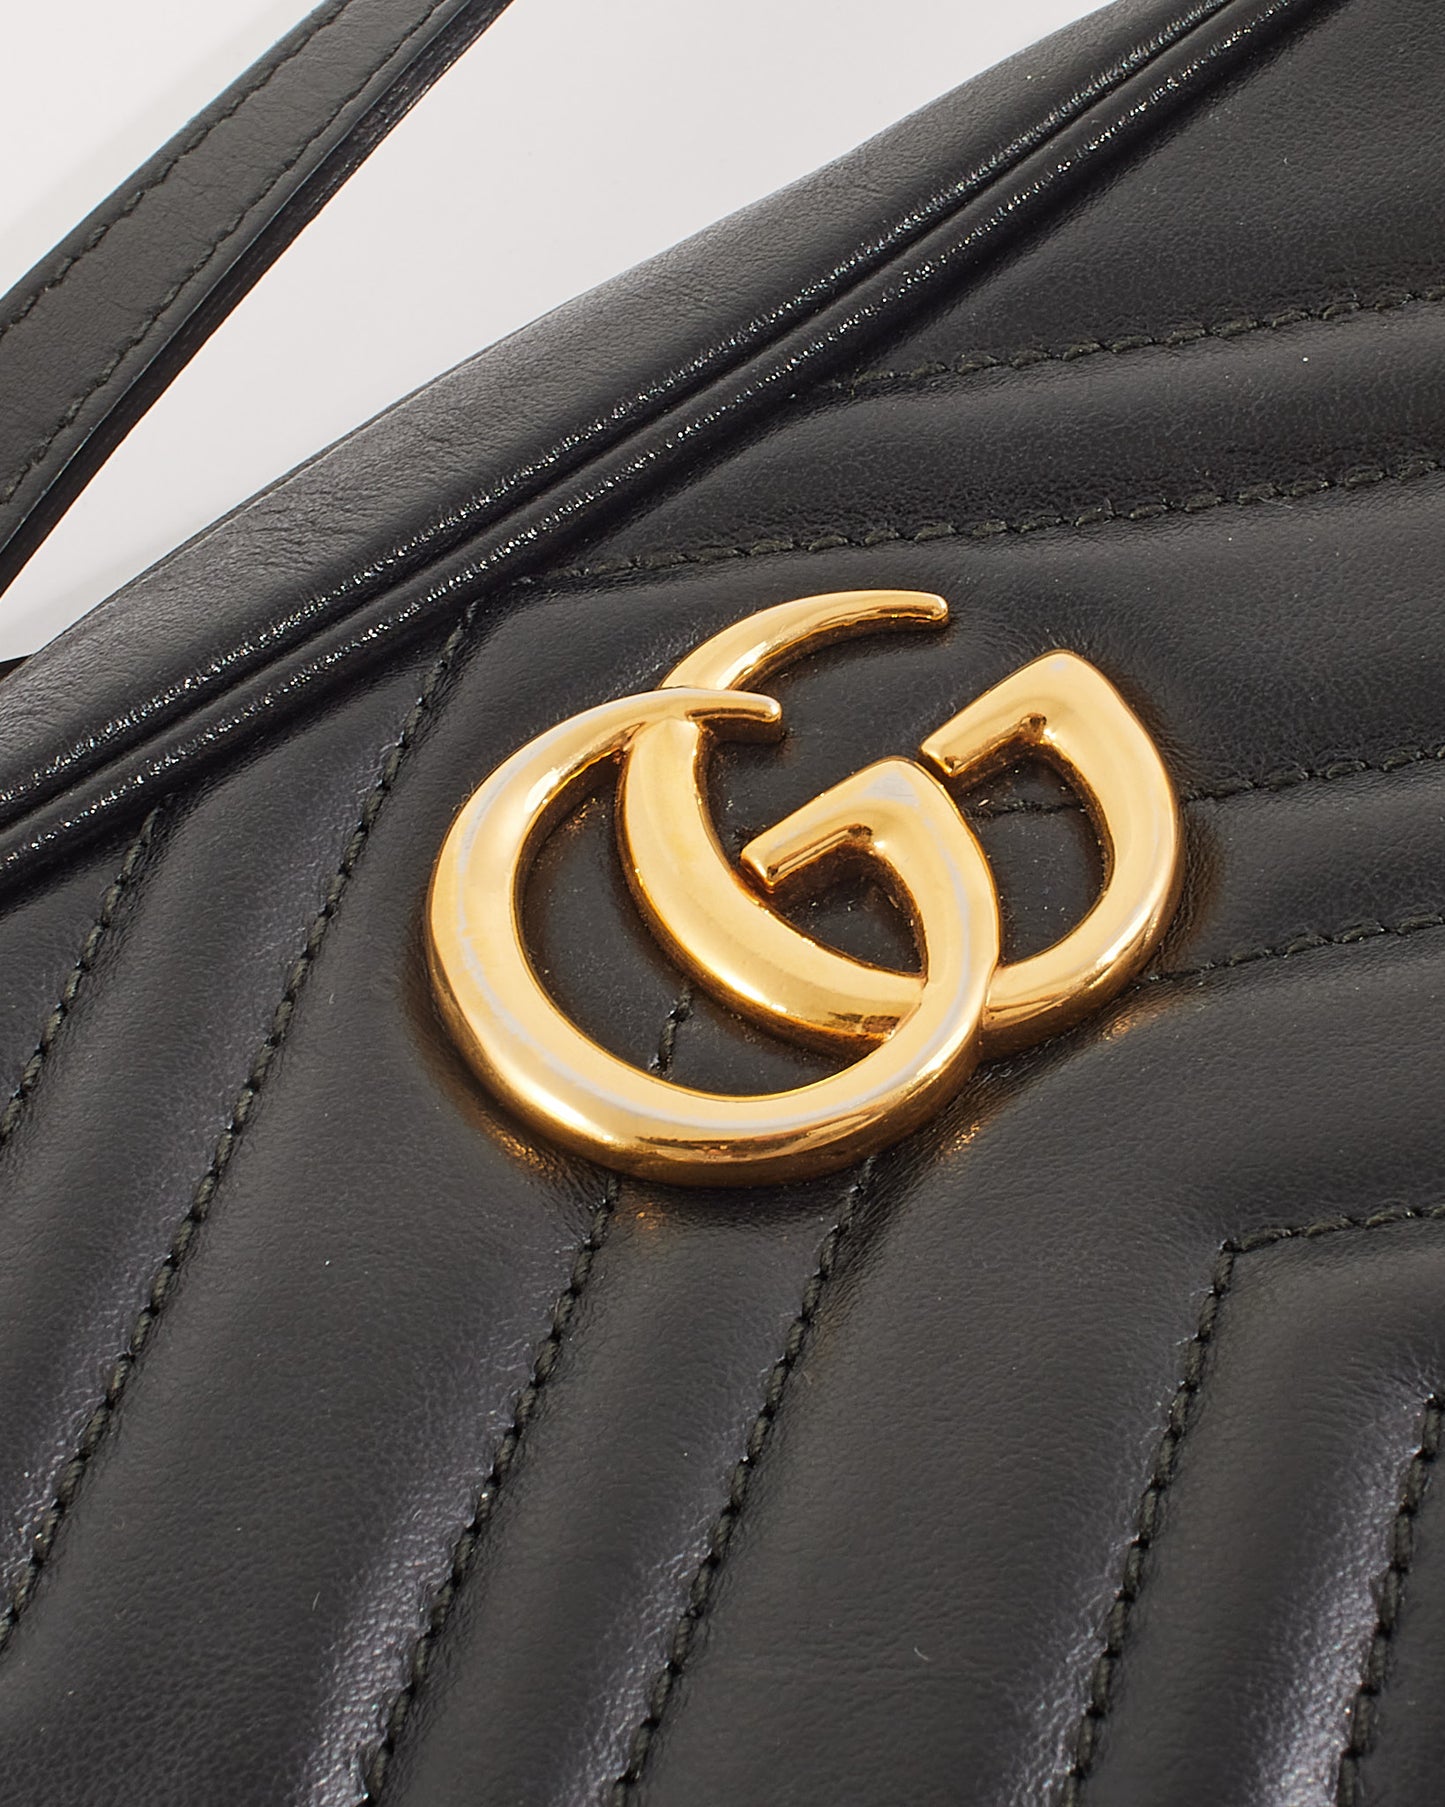 Mini sac à bandoulière GG Marmont en cuir matelassé noir Gucci